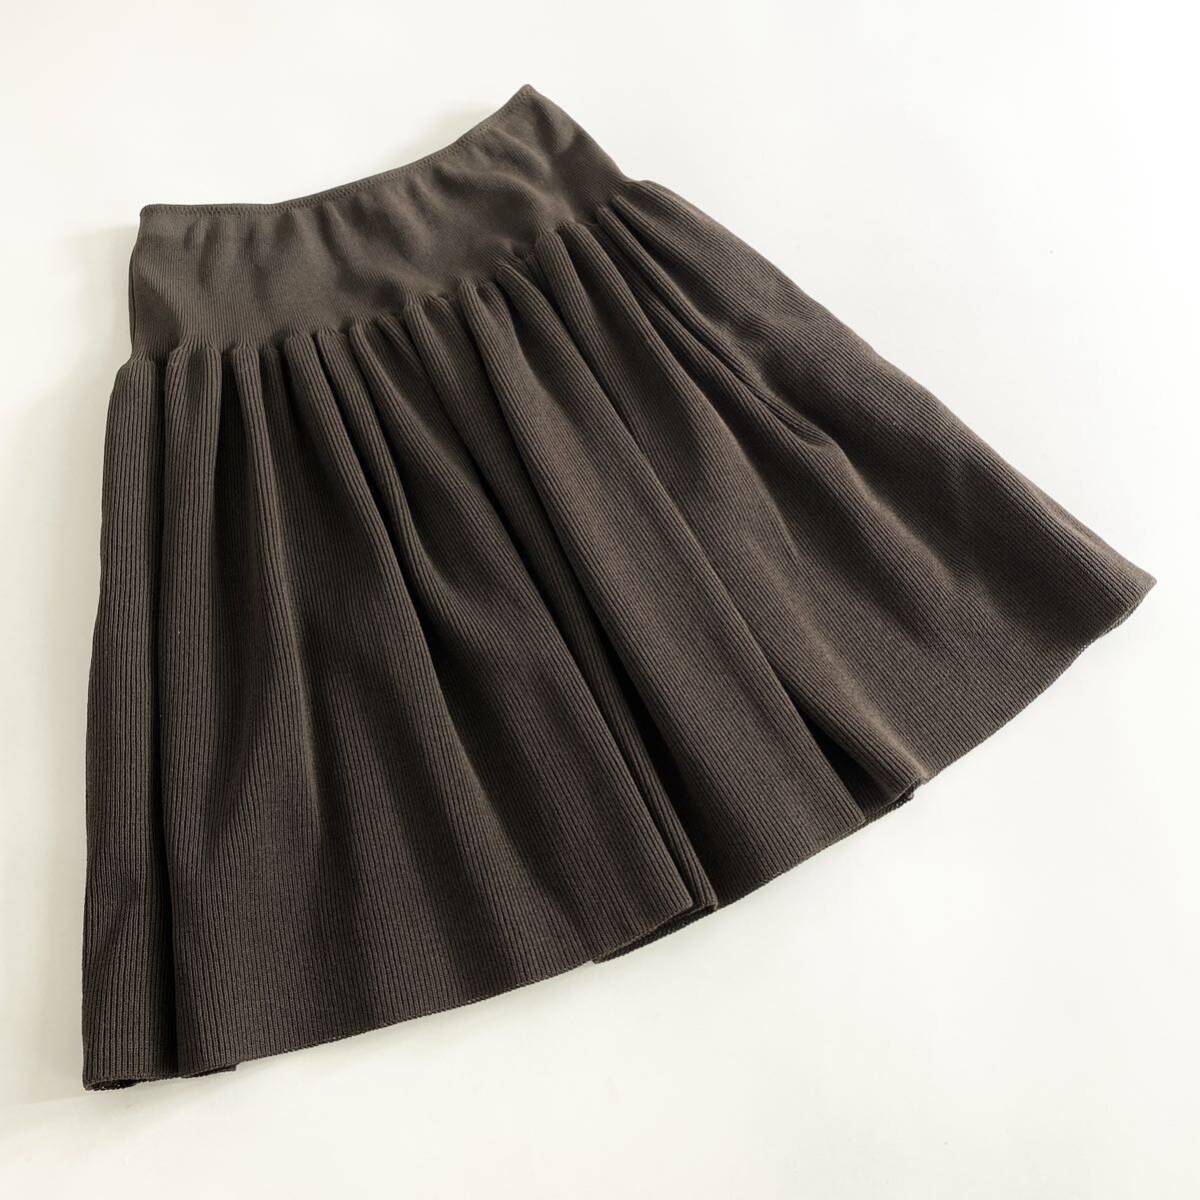 Wc20 日本製 FOXEY BOUTIQUE フォクシーブティック ニットスカート サイズ38 ブラウン レディース フレアスカート ひざ丈スカート ボトムス_画像1